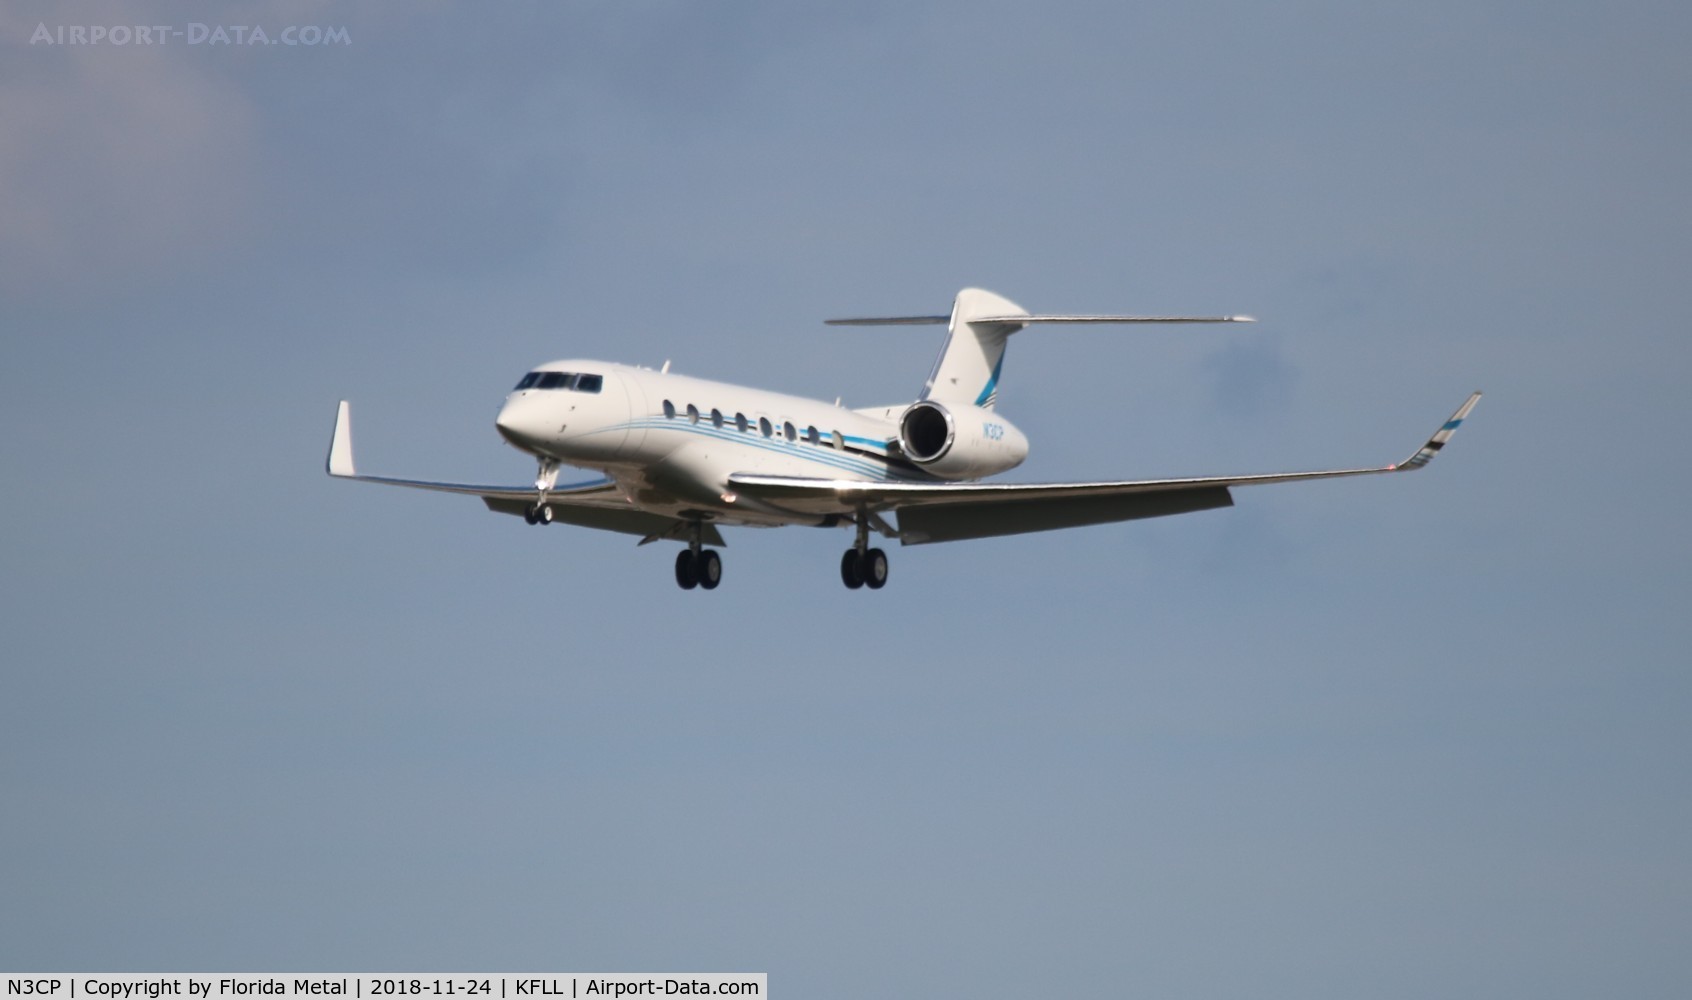 N3CP, 2014 Gulfstream Aerospace G650 (G-VI) C/N 6106, FLL spotting